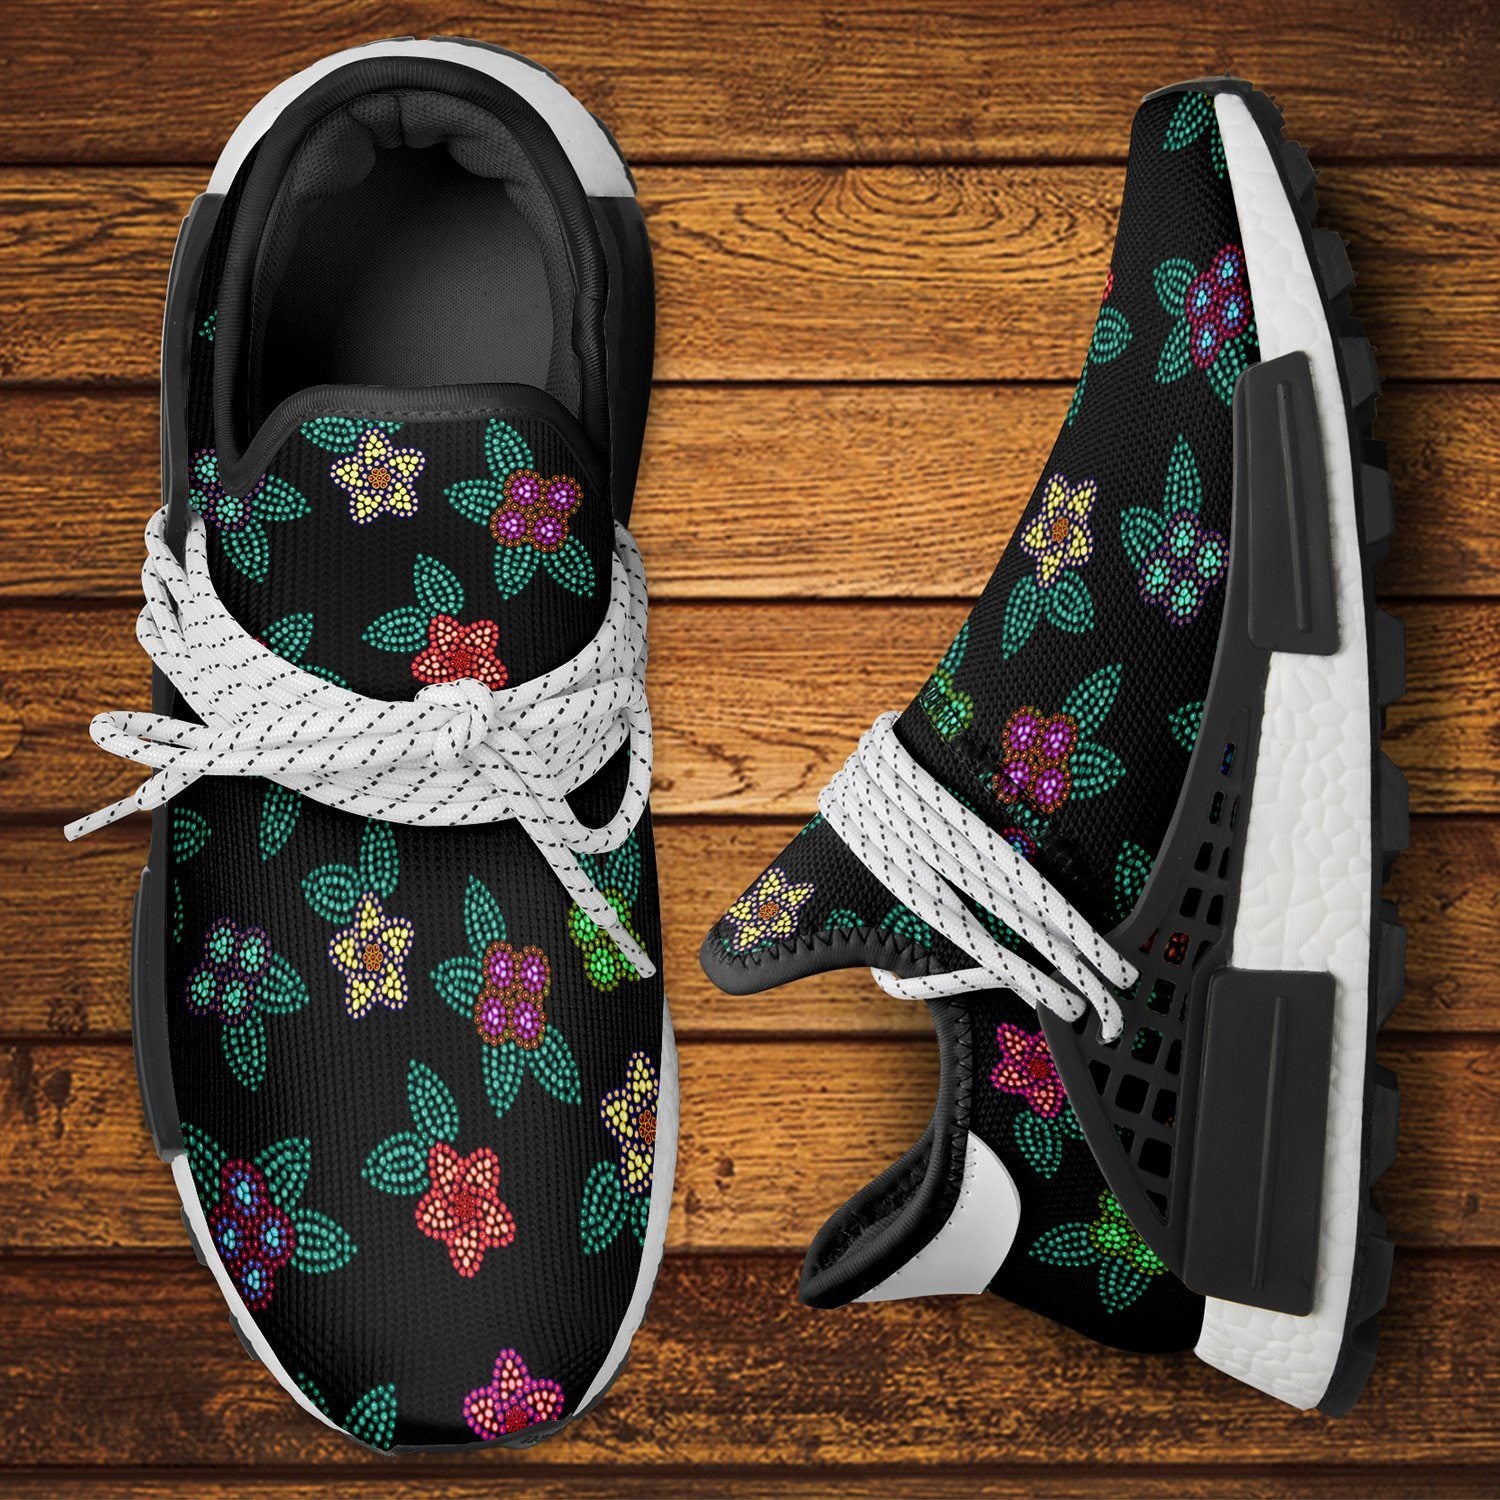 Berry Flowers Black Okaki Sneakers Shoes Herman 